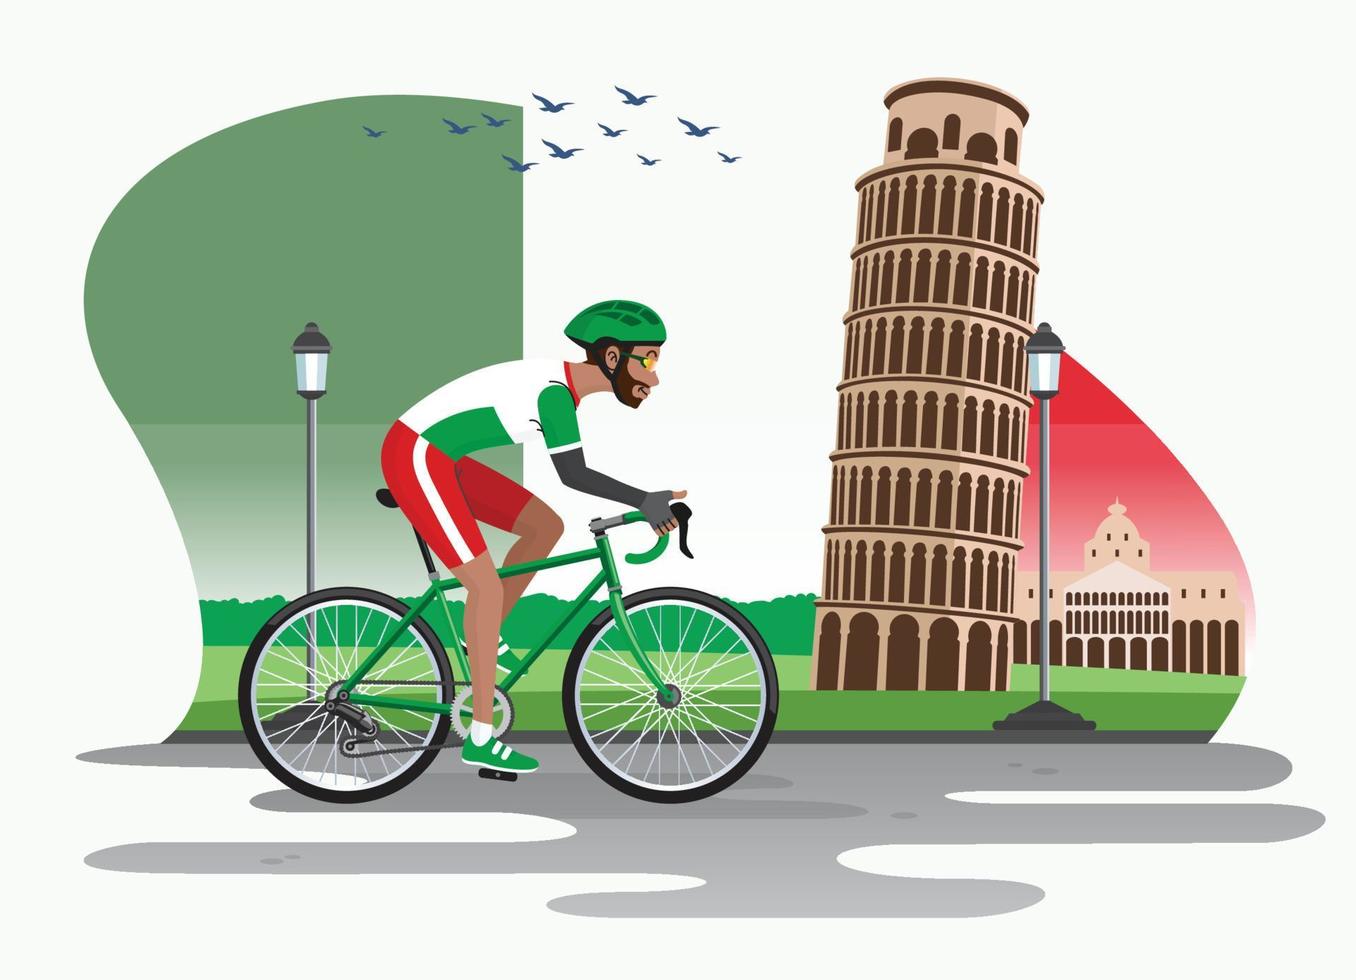 Mens wielersport in Italië met Pisa toren net zo achtergrond vector